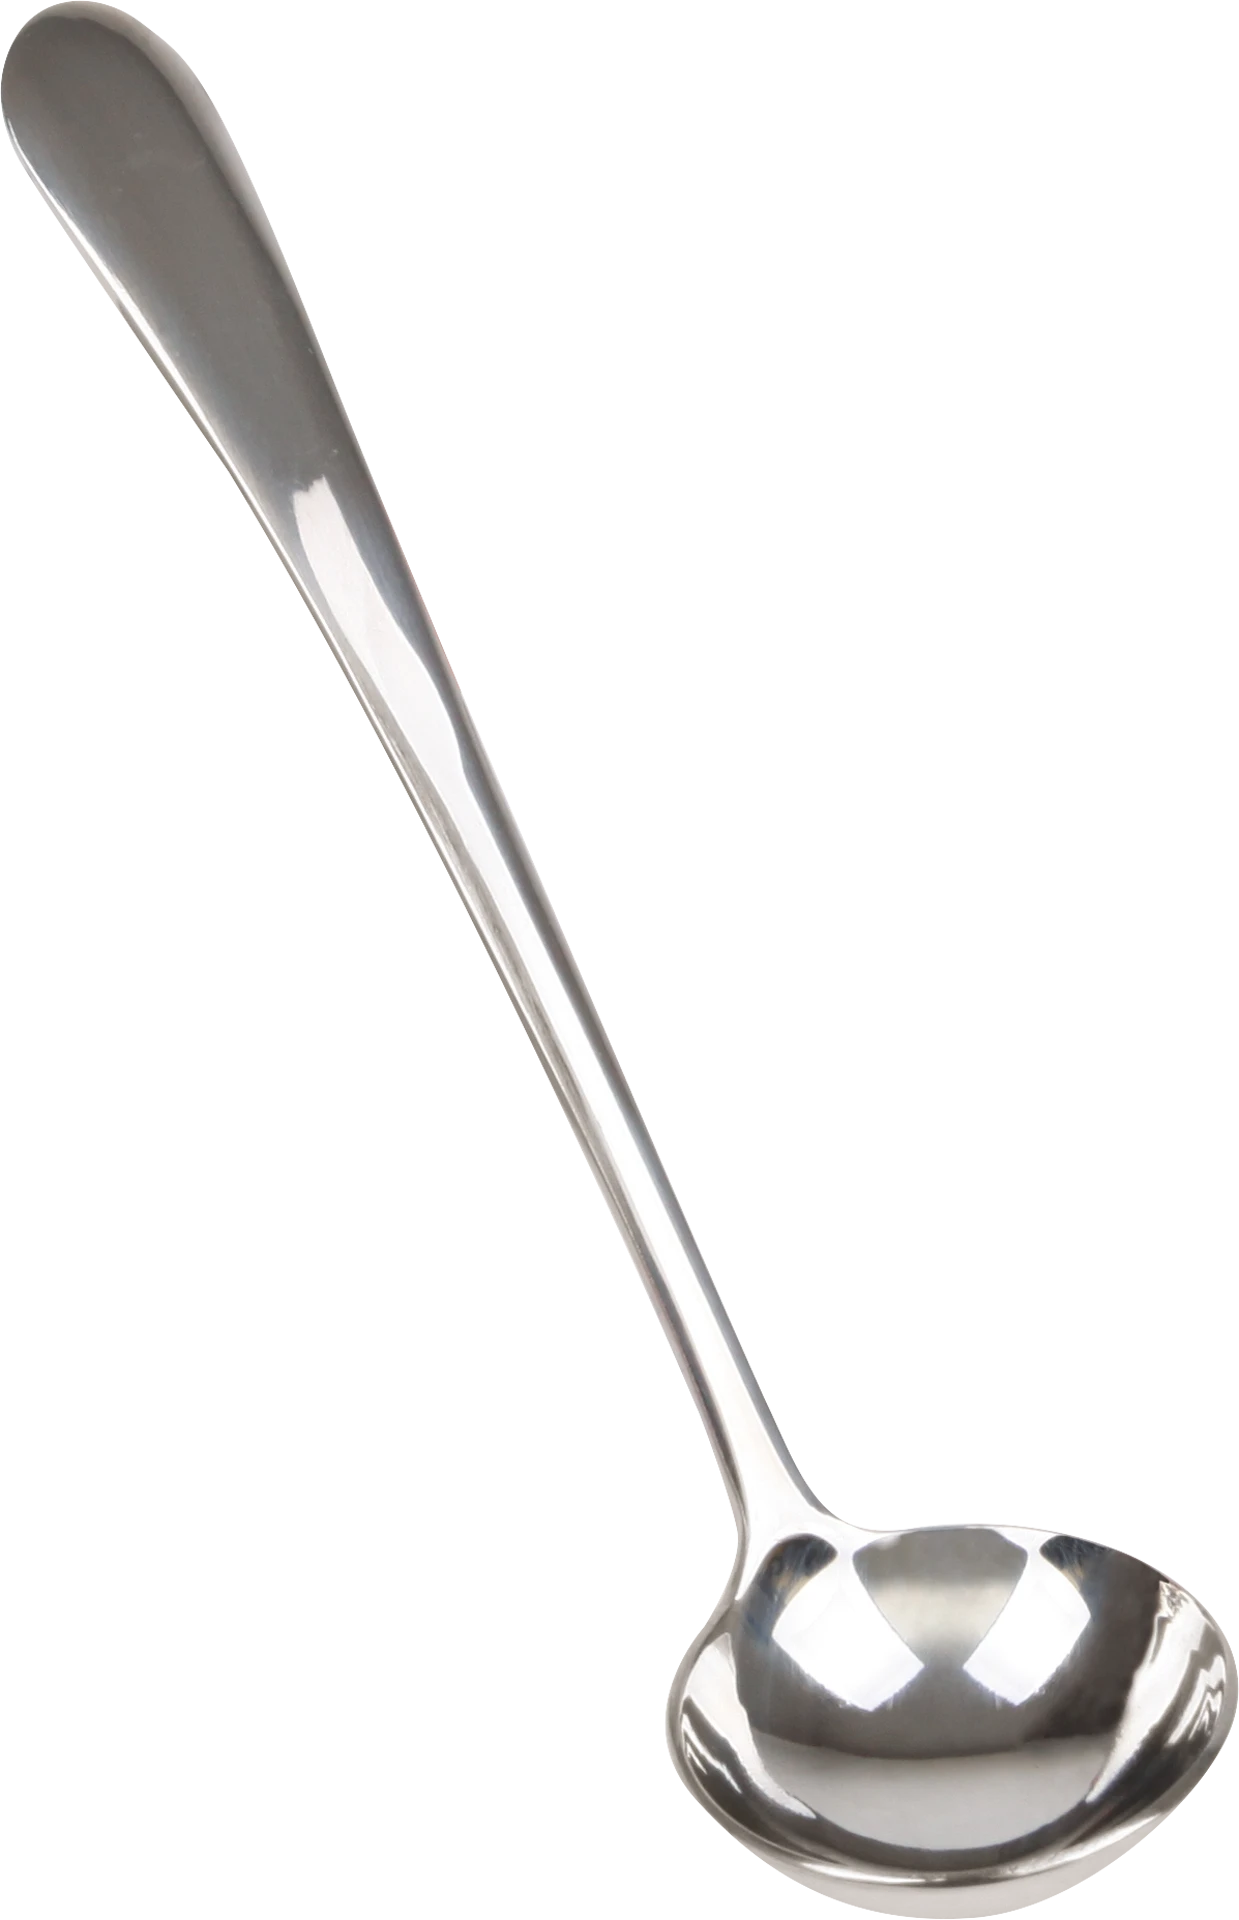 jam spoon